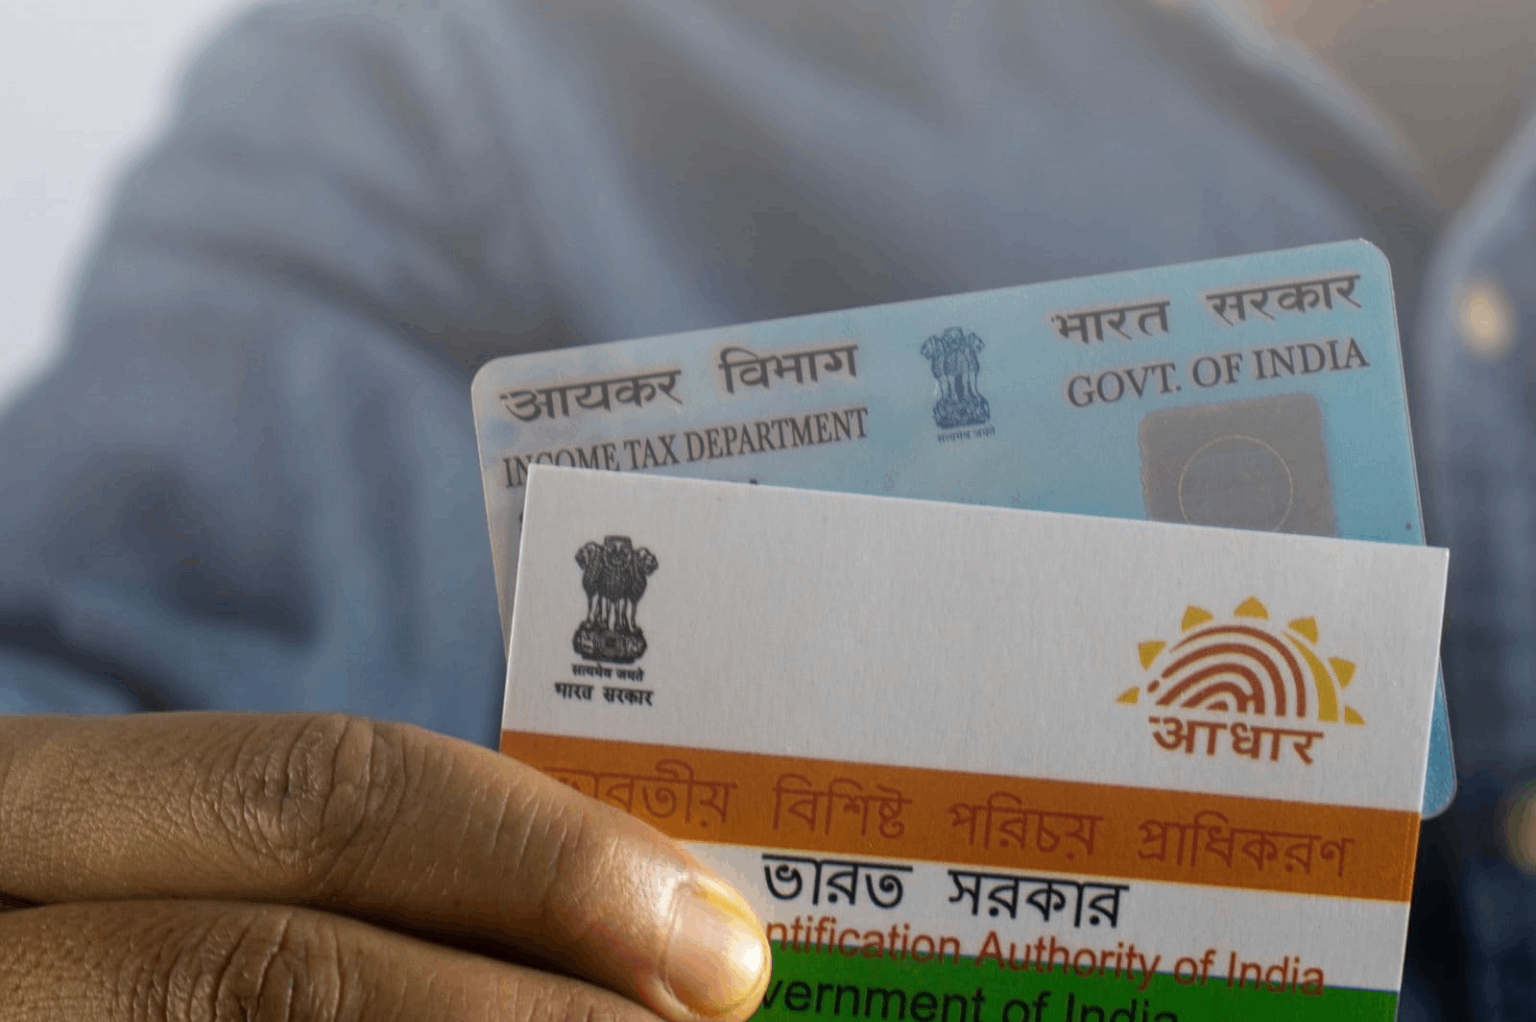 PAN card-Aadhaar linking: Why it is mandatory? Know How to link PAN with Aadhaar